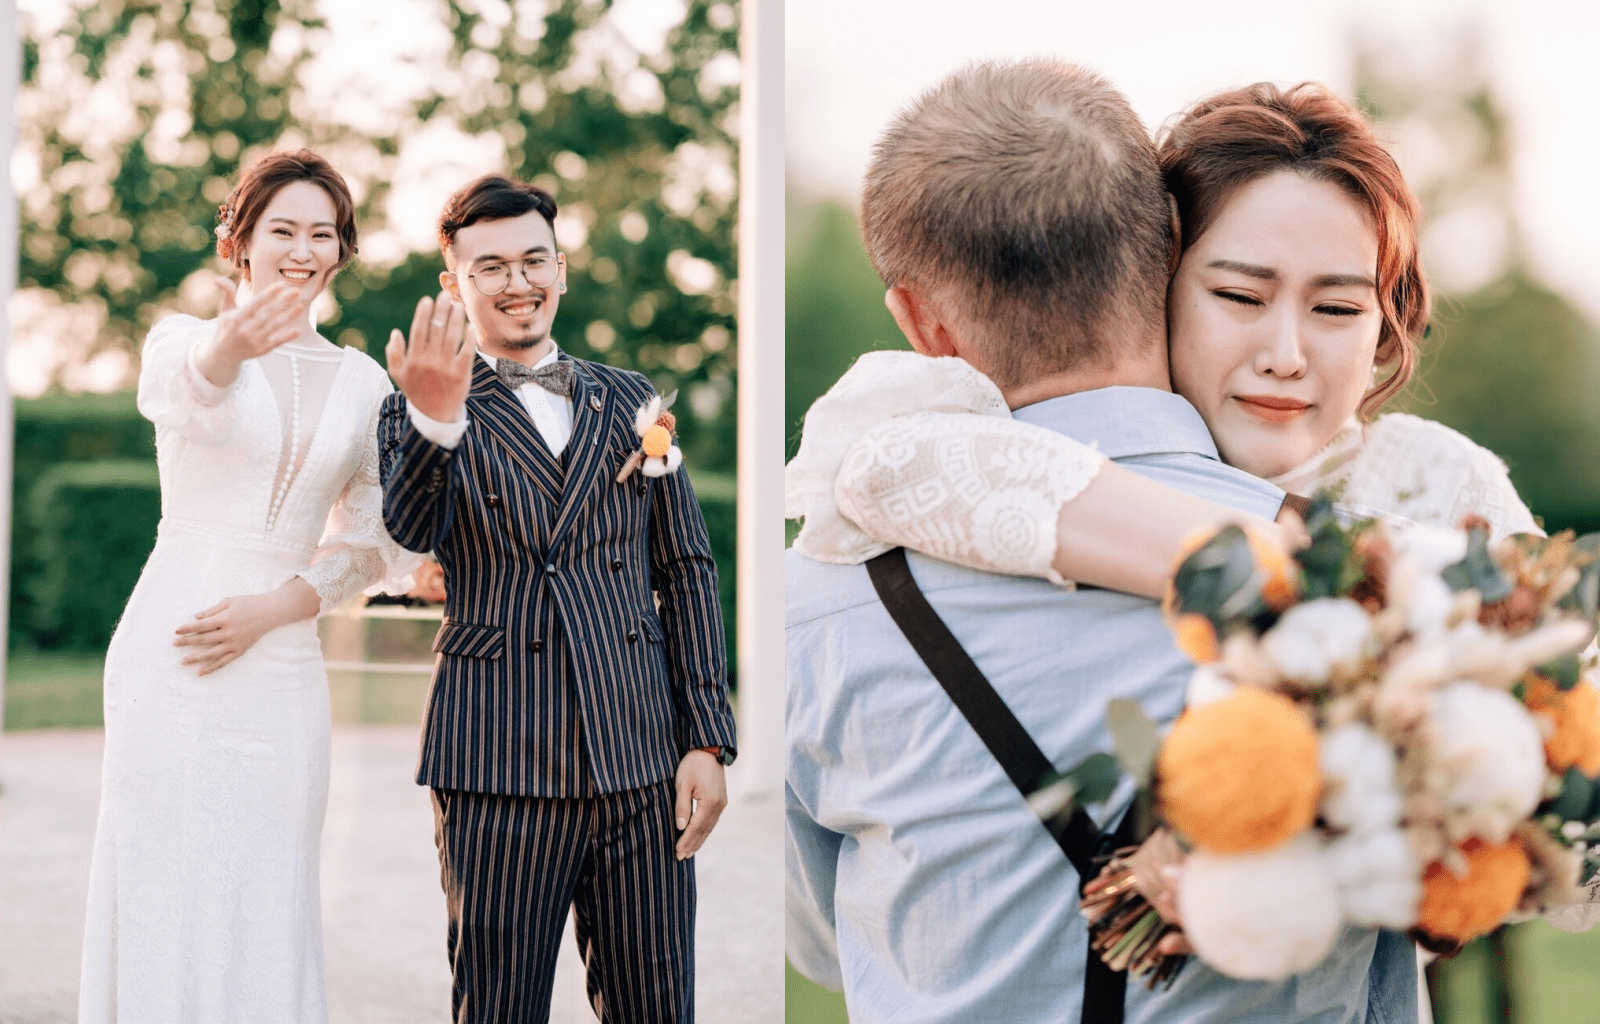 2022婚攝名單,婚攝推薦,2022年婚禮攝影師/婚攝團隊推薦,Rex Chang Foto